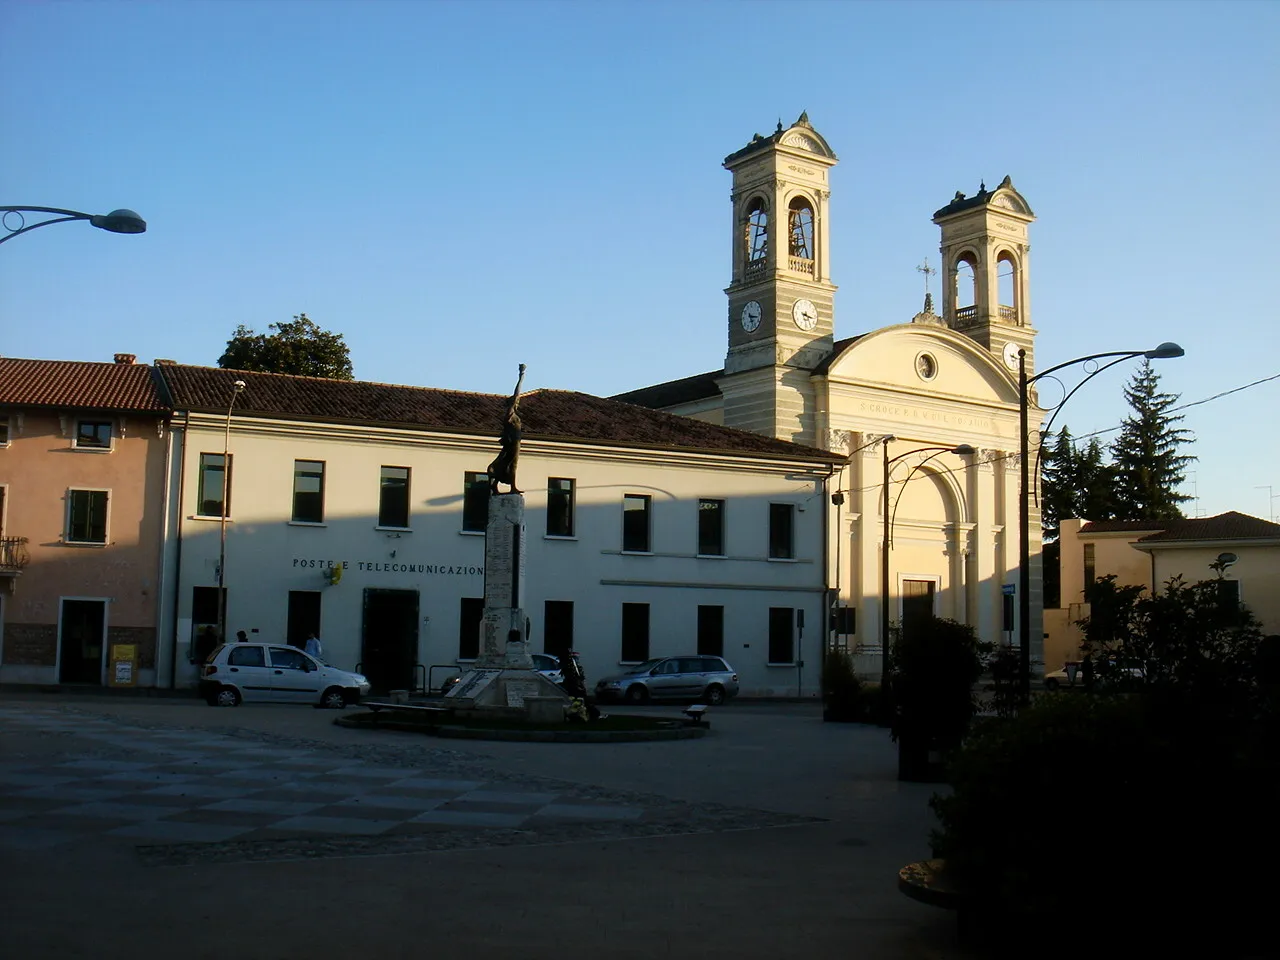 Imagen de Friuli-Venezia Giulia